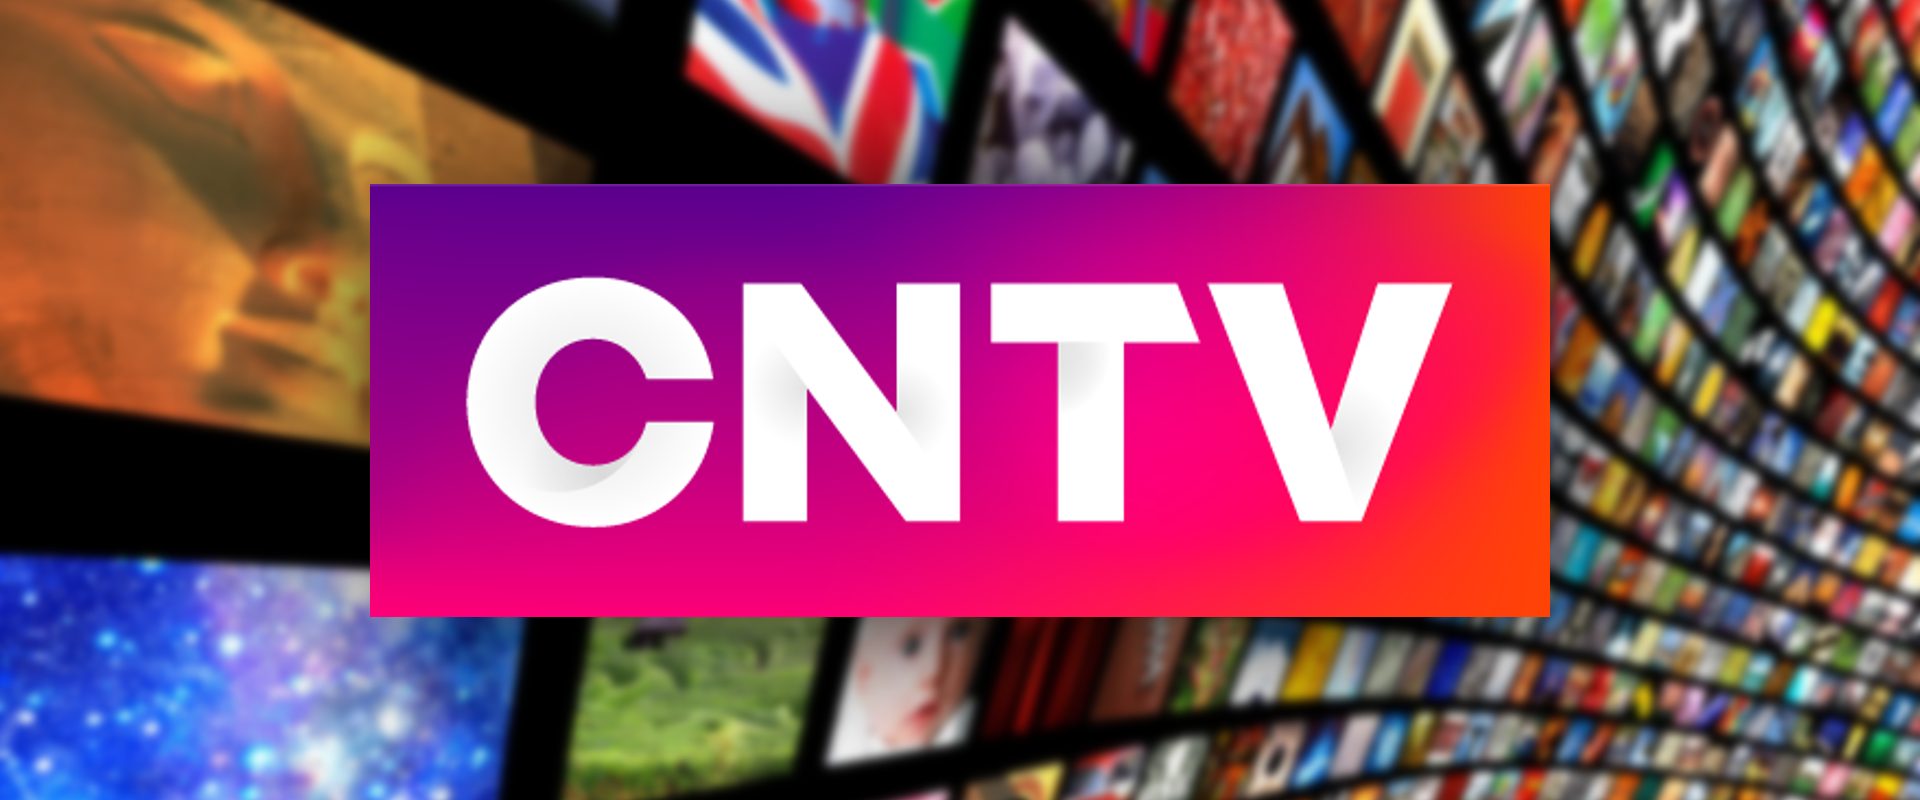 CNTV - Televisión - matinales